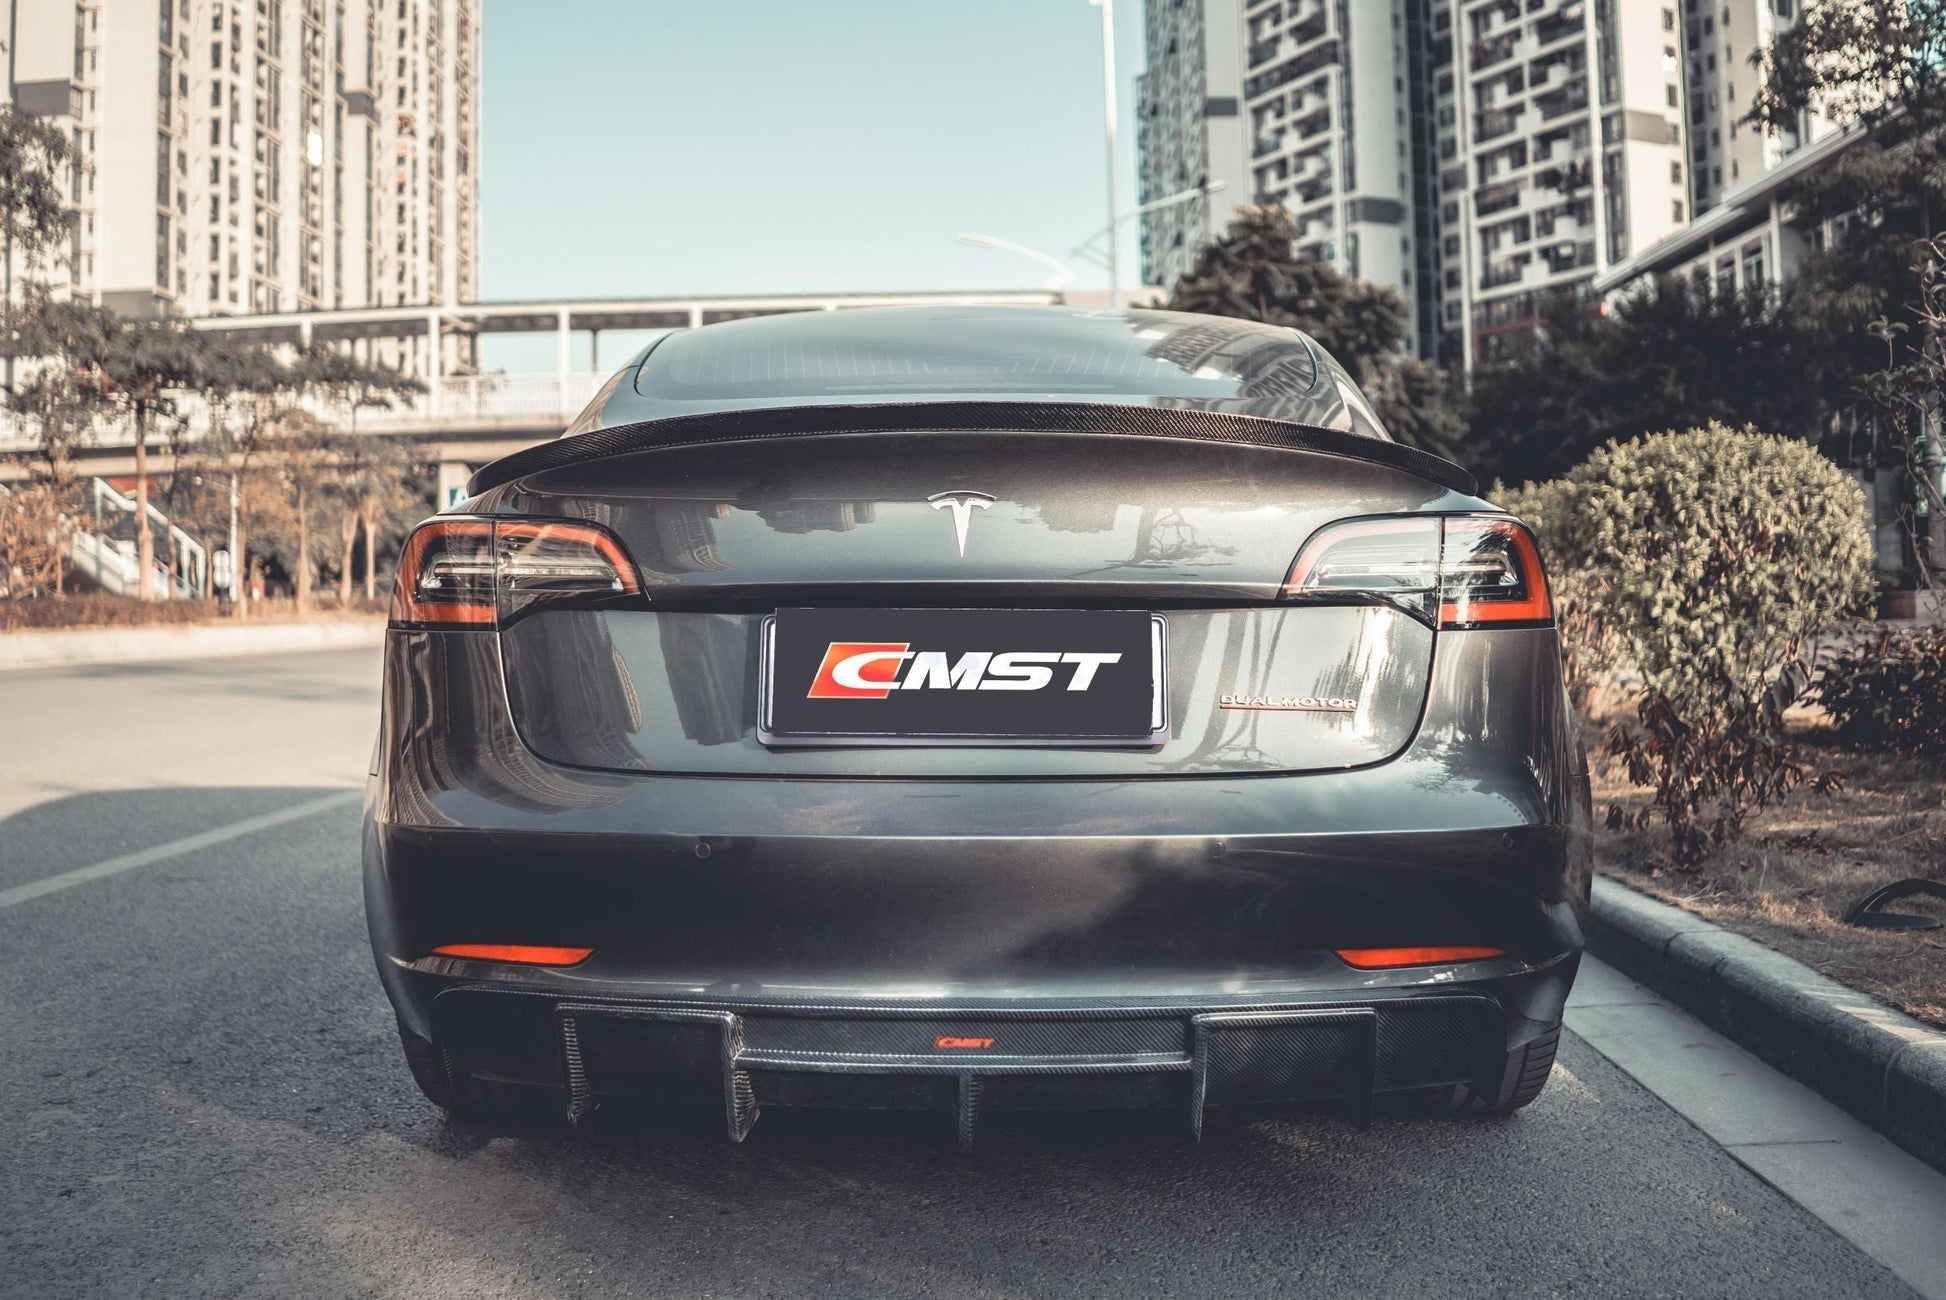 TESERY×CMST Tesla Model 3 Carbon Fiber Rear Spoiler Ver.2 - Tesery Official Store